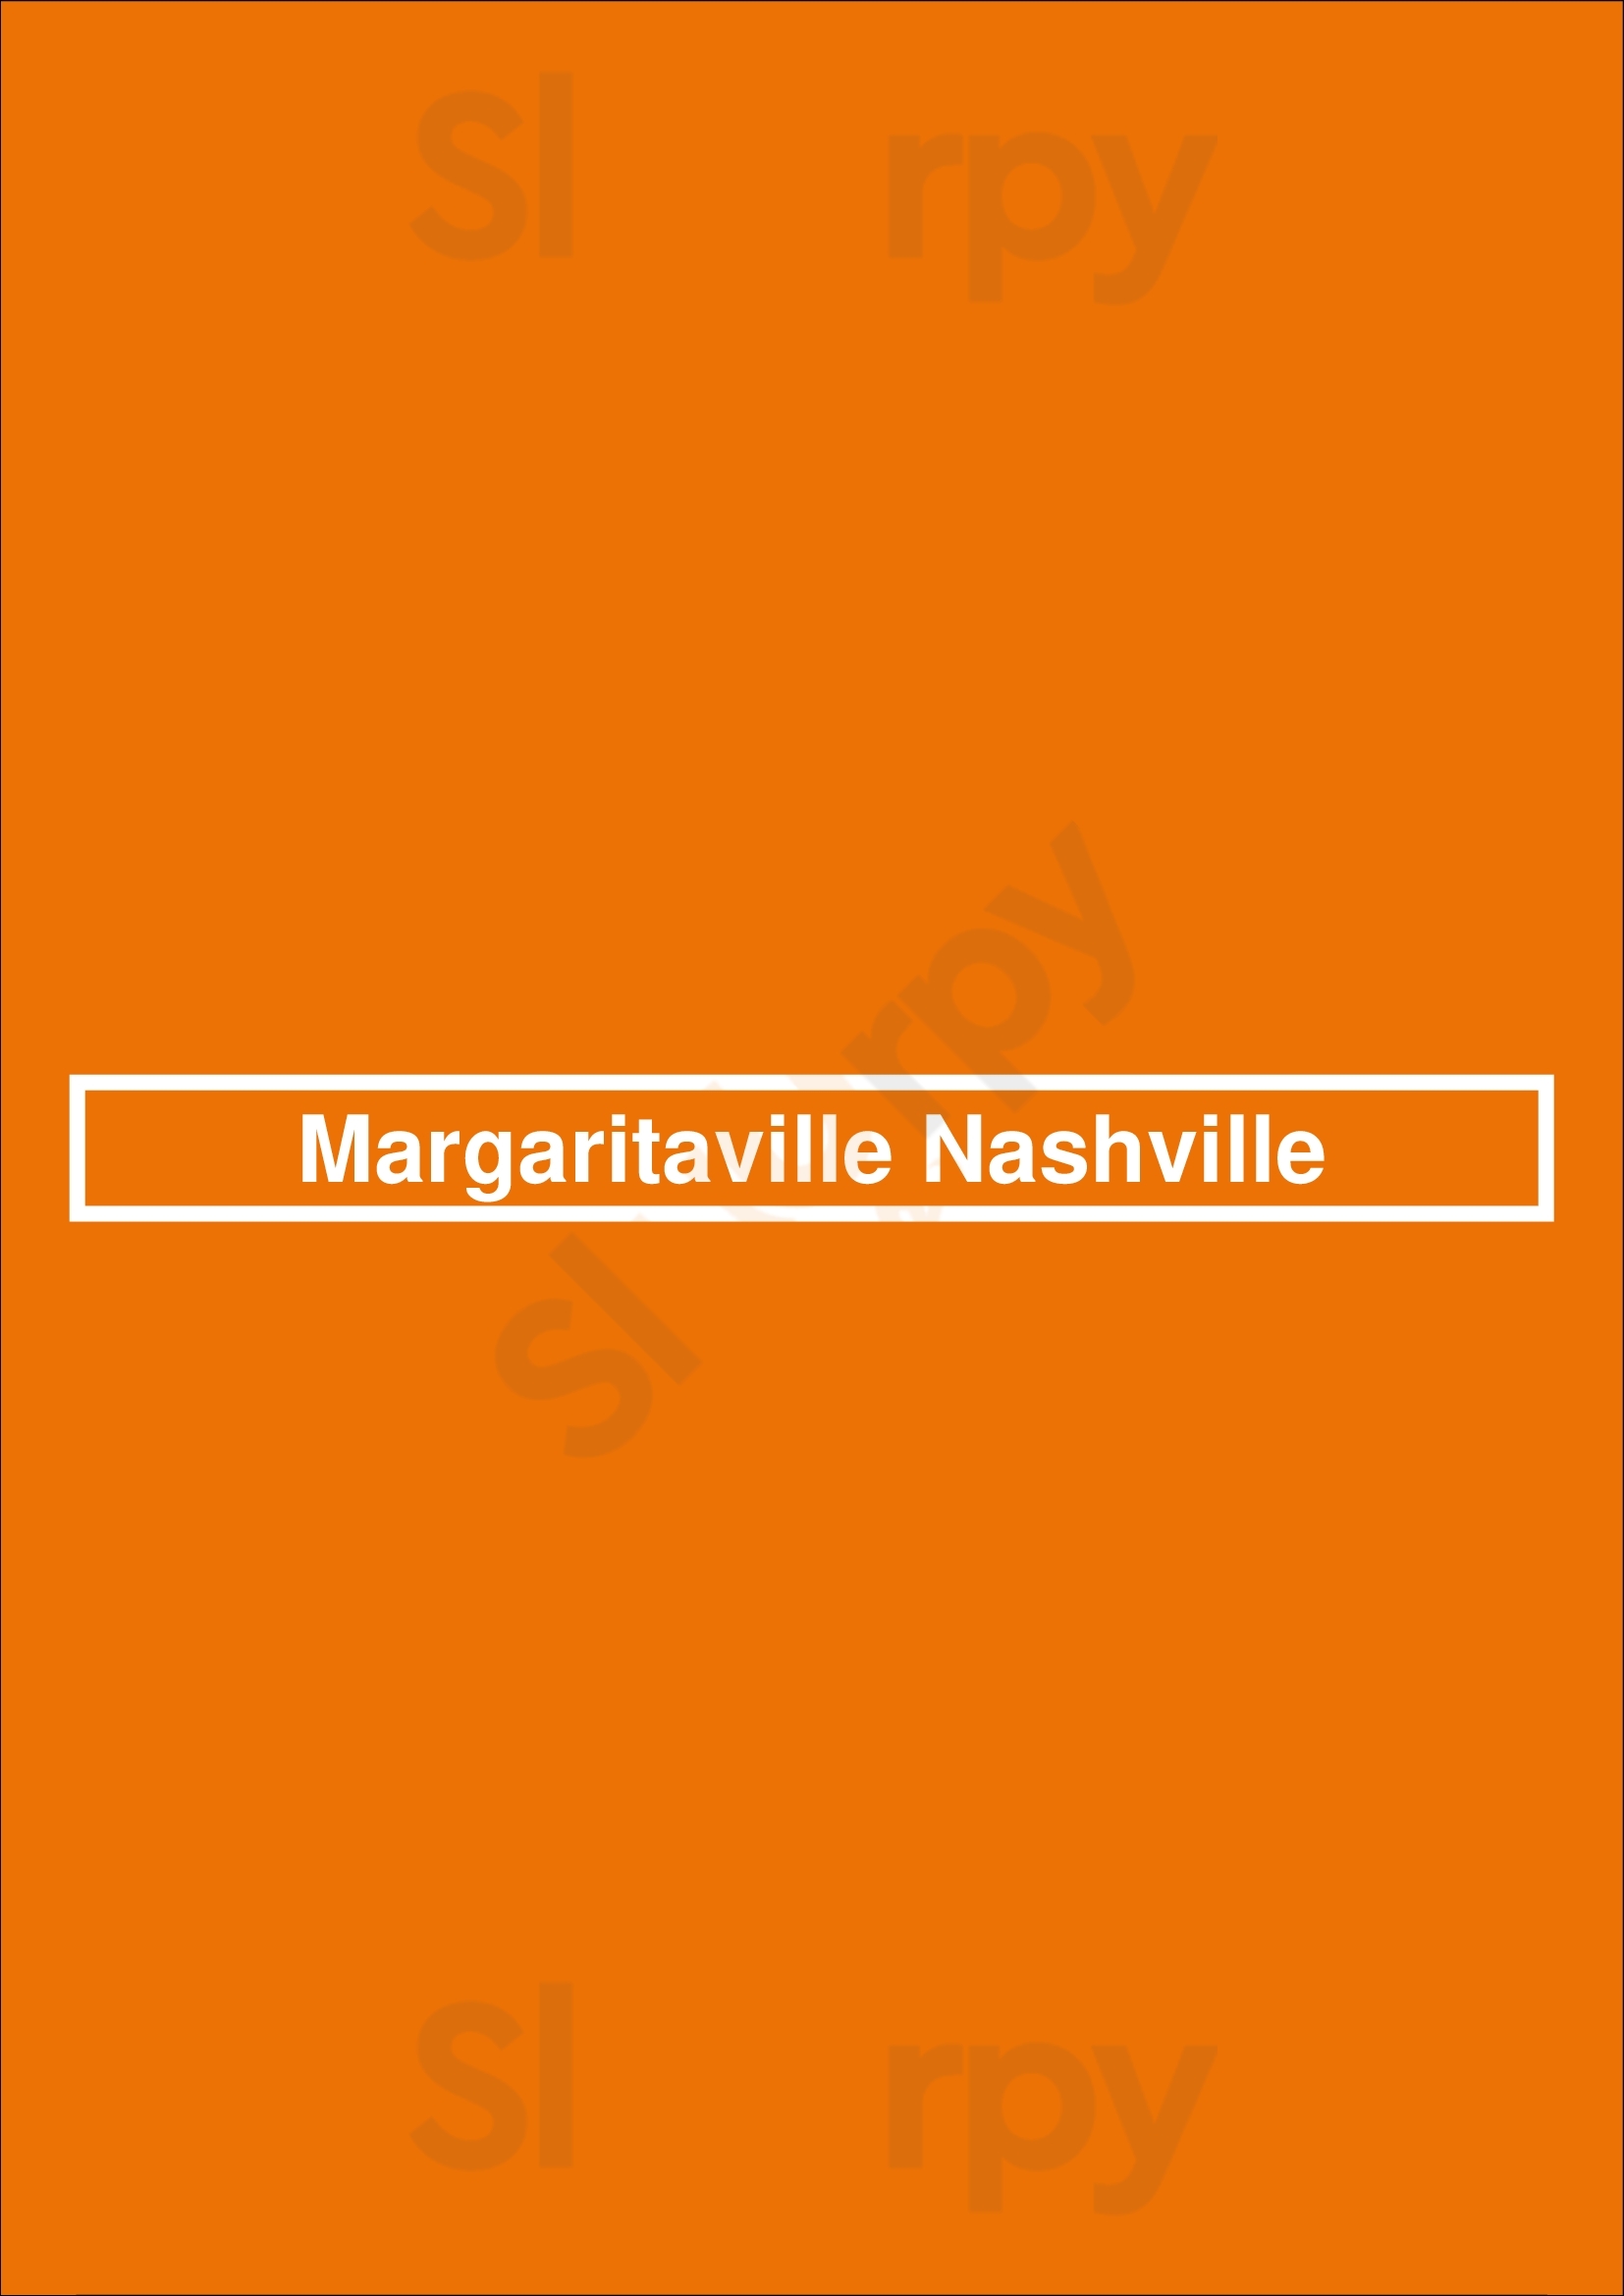 Margaritaville - Nashville Nashville Menu - 1